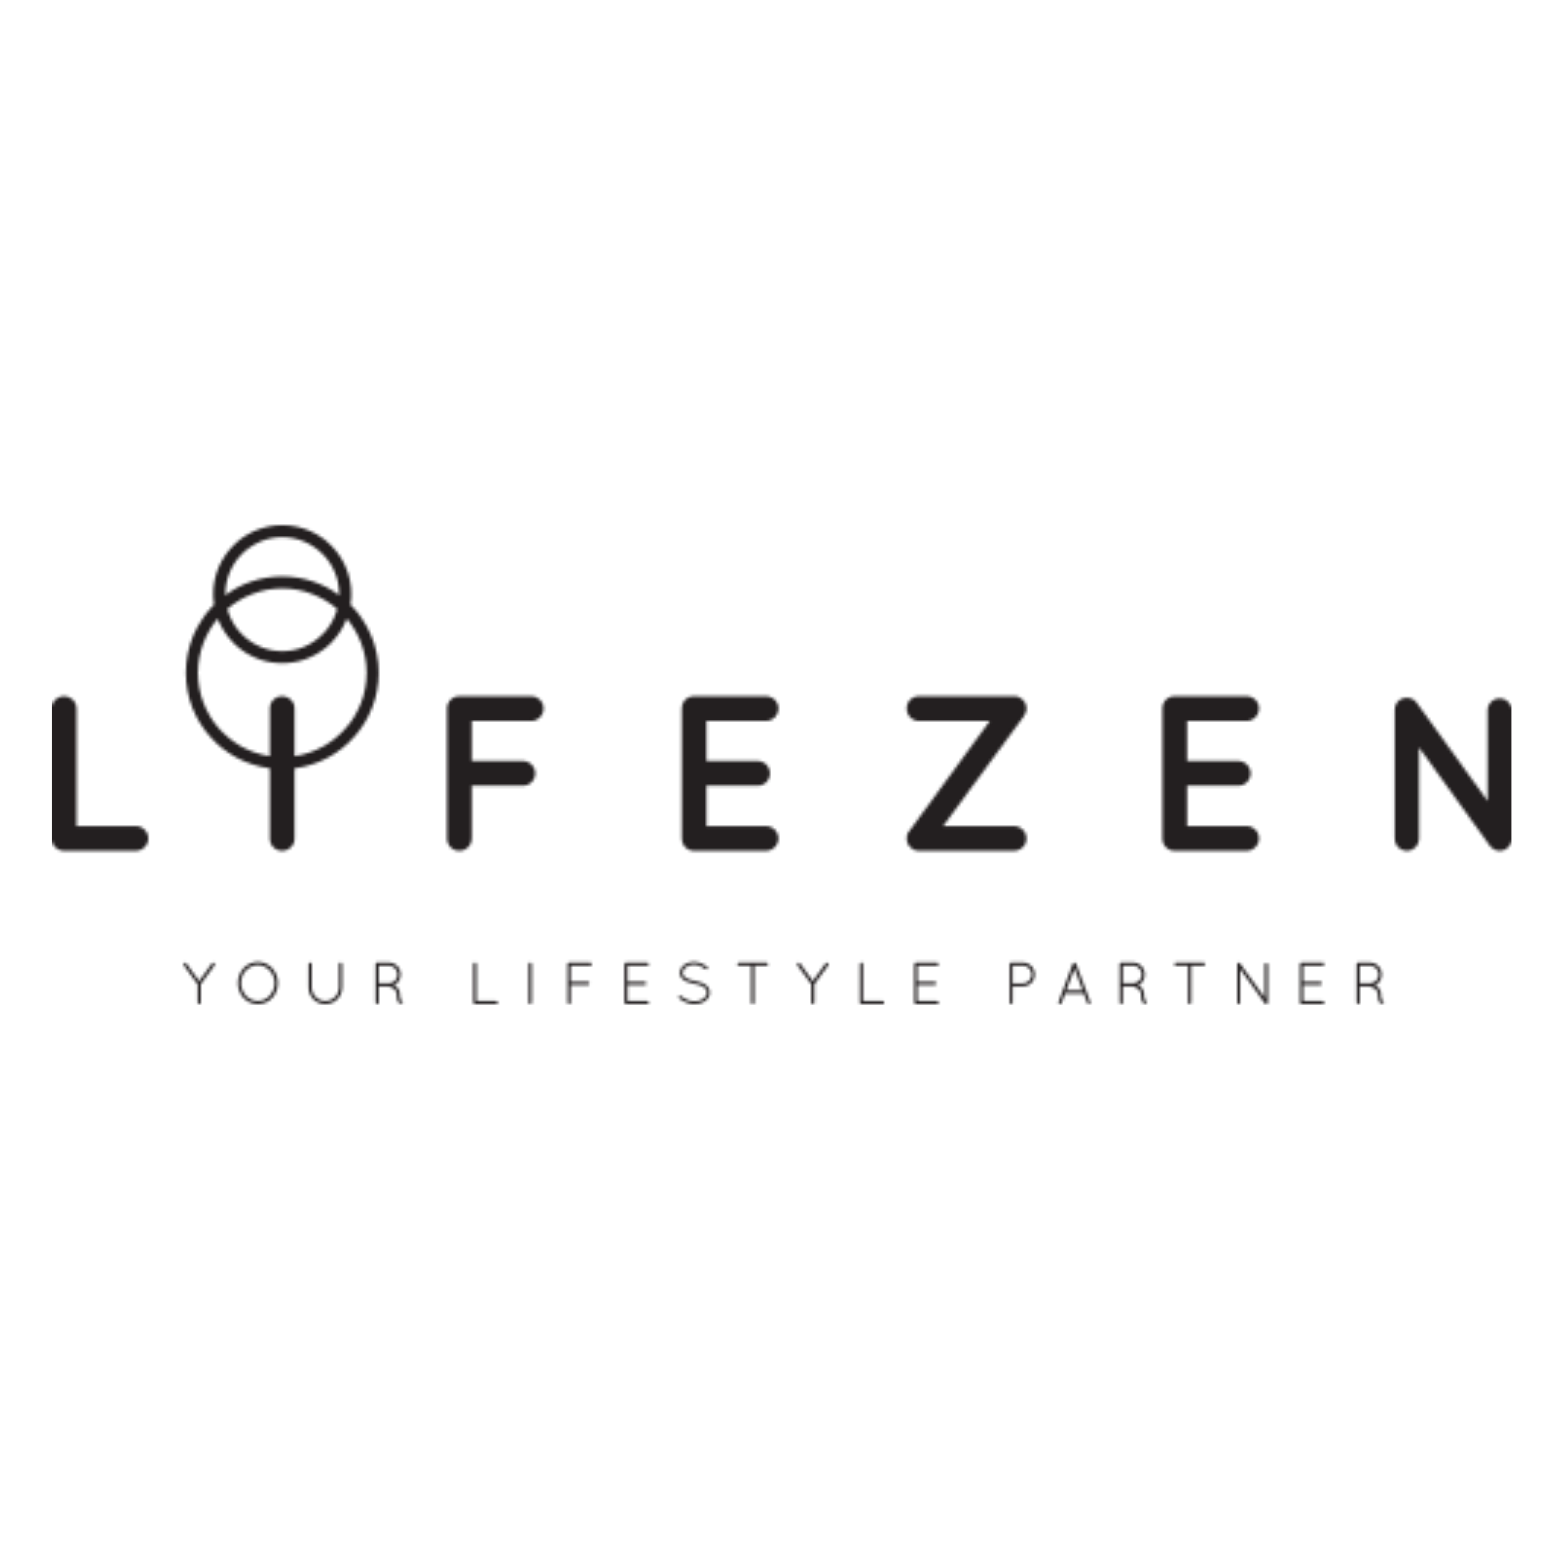 LIFEZEN - Your Lifestyle Partner